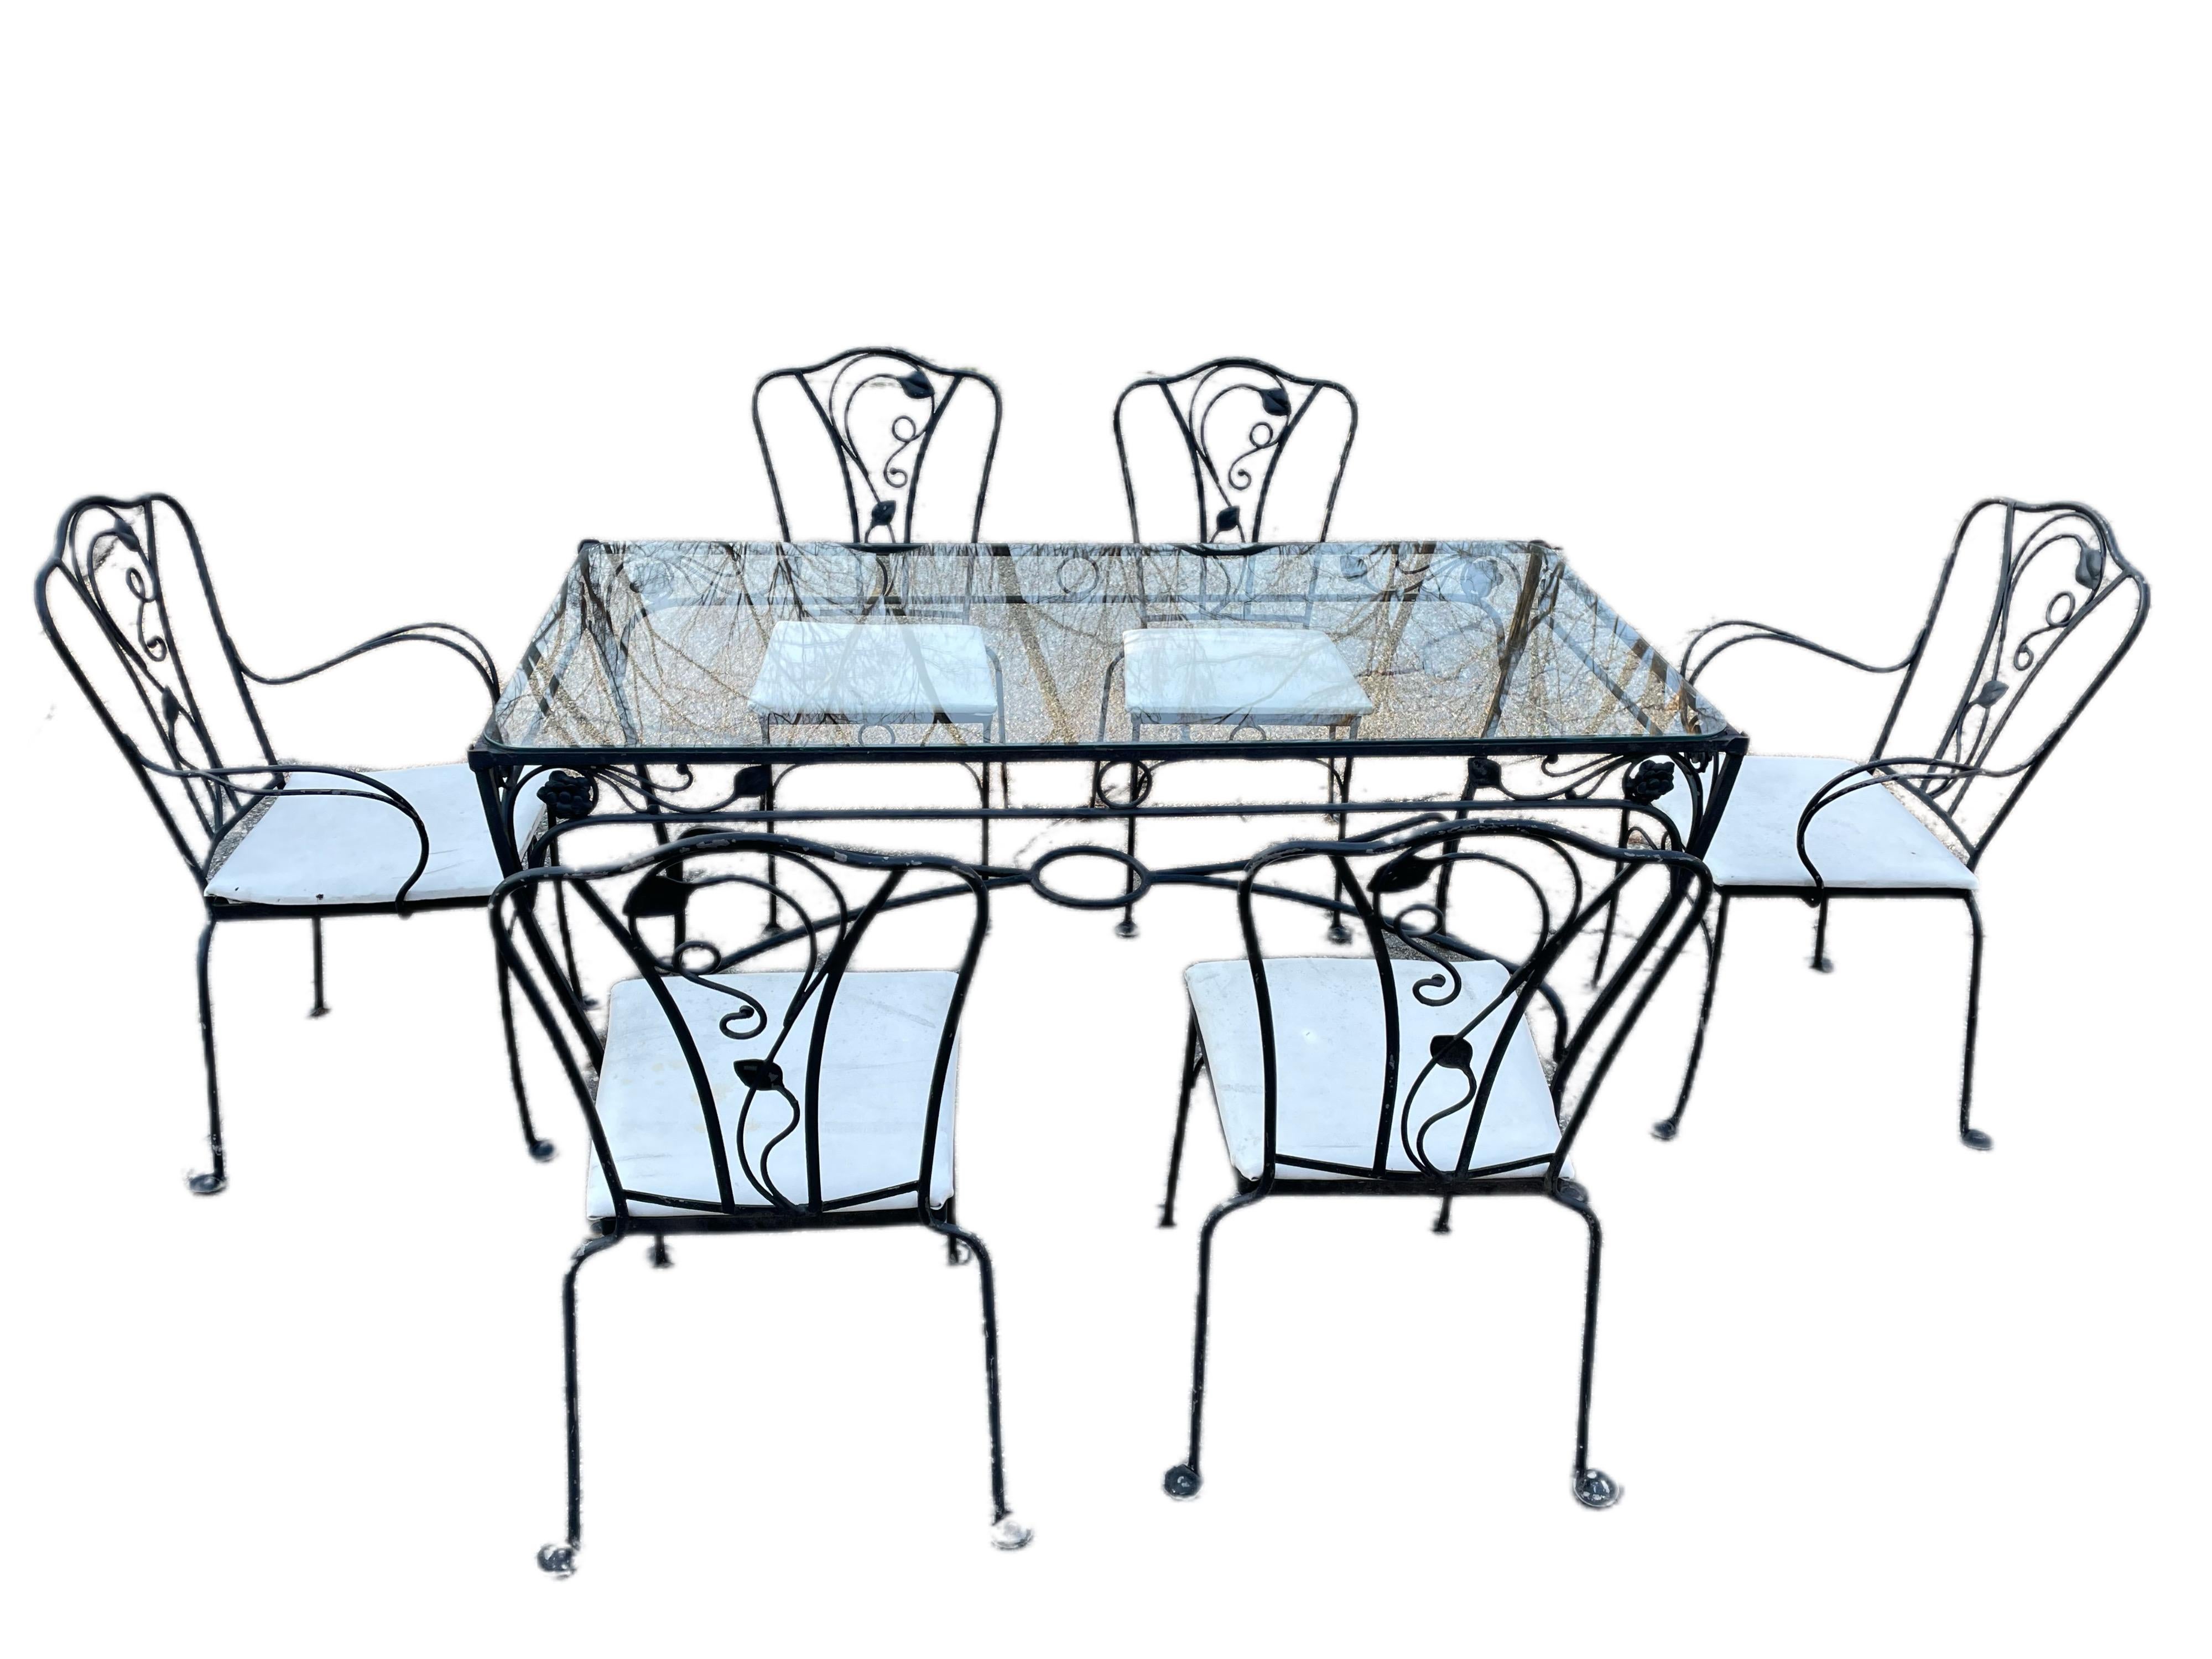 Salterini Ensemble de sièges de salle à manger 7 pièces

Table de 60 pouces conçue par Salterini, difficile à trouver. 6 places assises. Pieds tournés vers l'extérieur et motif floral signés Salterini. Profitez de cet ensemble de salle à manger 7